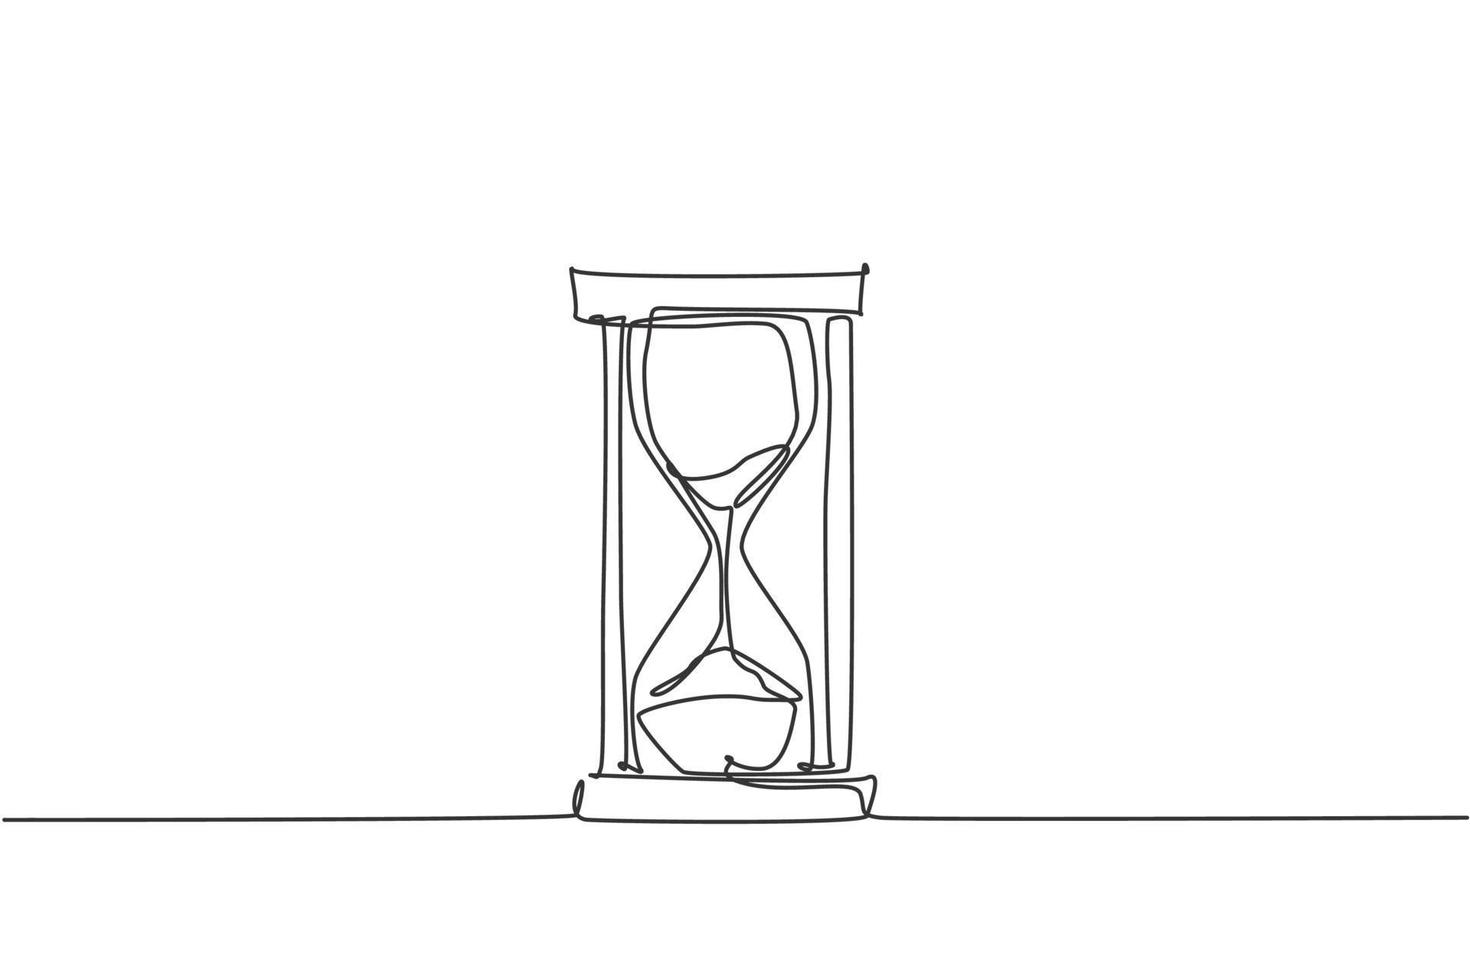 un dibujo de línea continua del antiguo reloj de arena clásico. vidrio de arena para mostrar el tiempo límite en el concepto de metáfora empresarial. Ilustración gráfica de vector de diseño de dibujo de línea única de moda